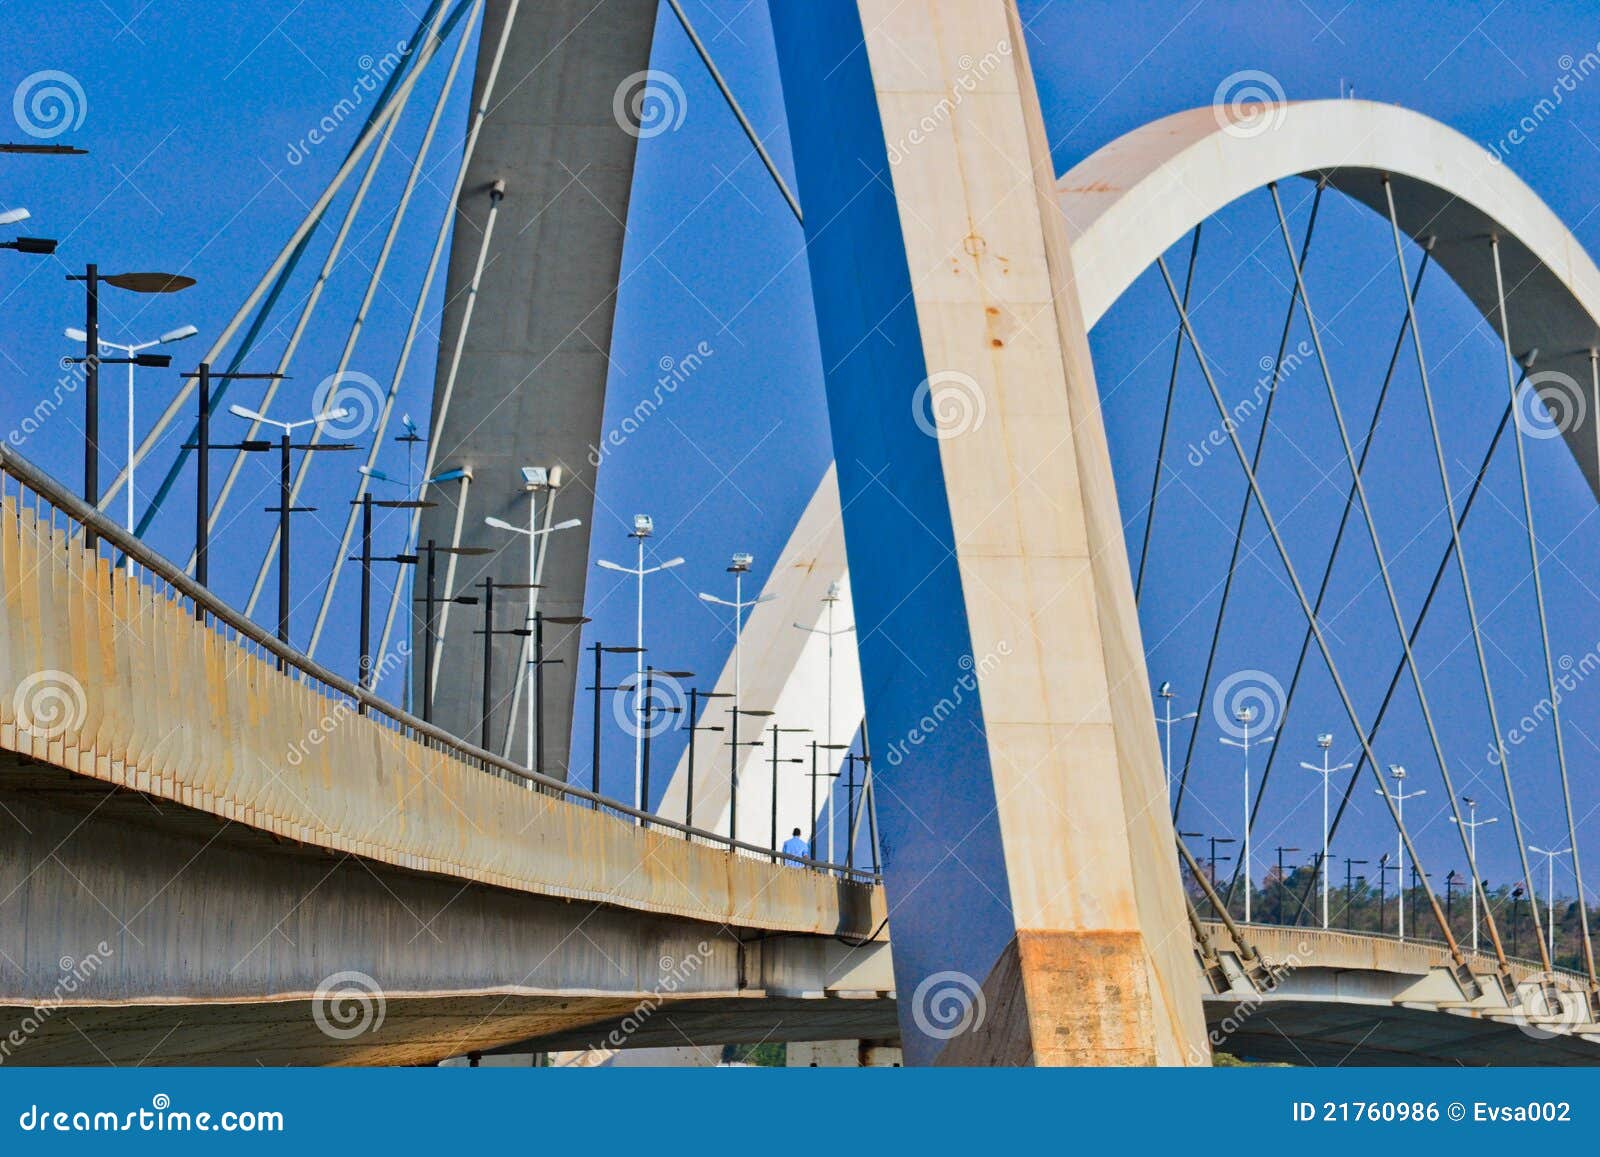 the jk bridge in brasilia